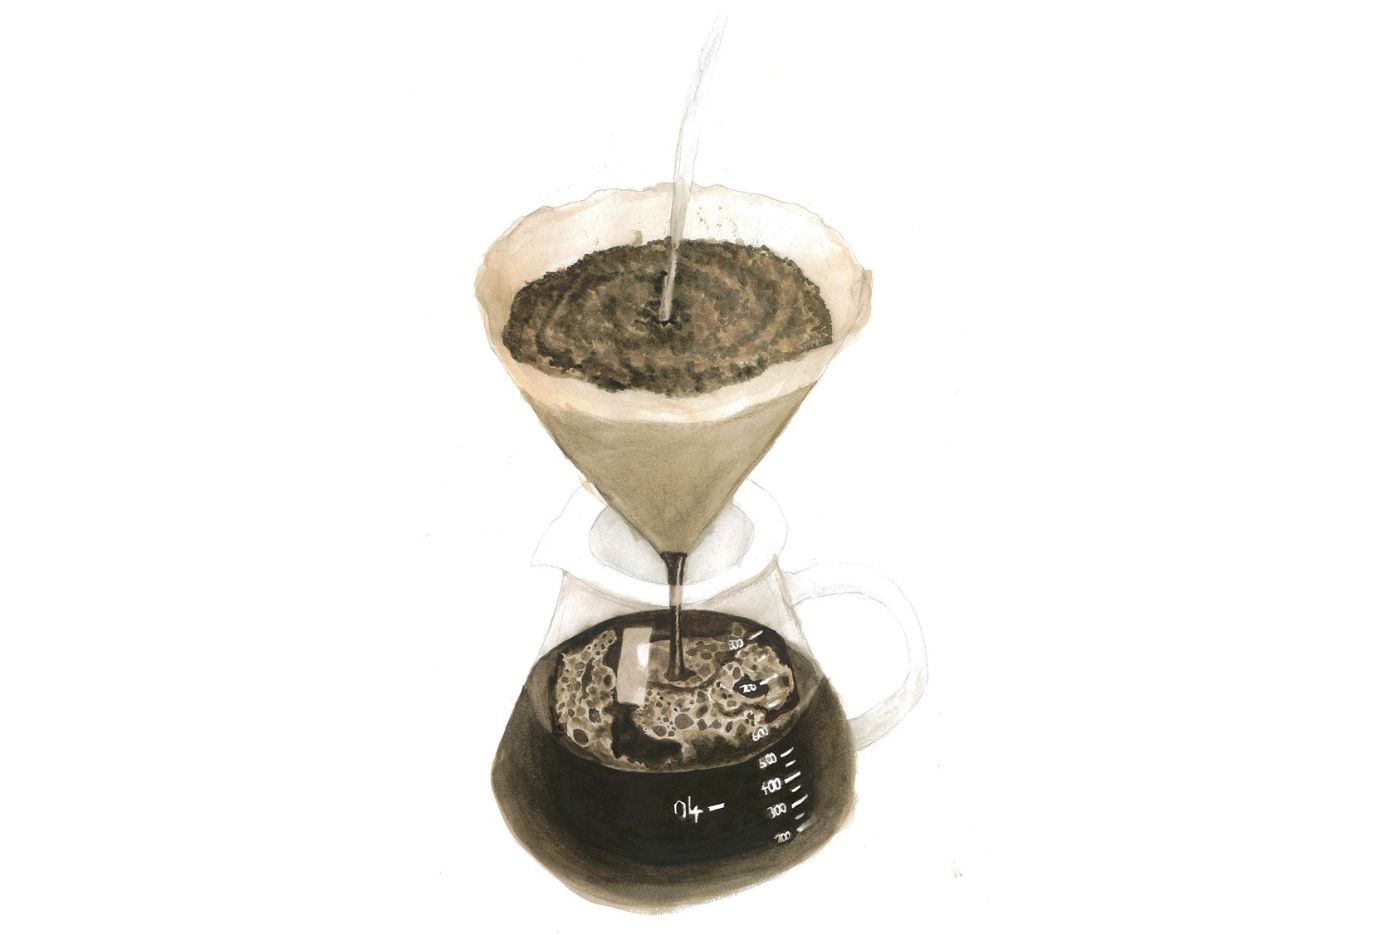 Realistisch gemaltes Bild in Brauntönen zeigt eine Kaffeekanne mit einem Filter darüber. In den Kaffeefilter wird gerade Wasser eingegossen.